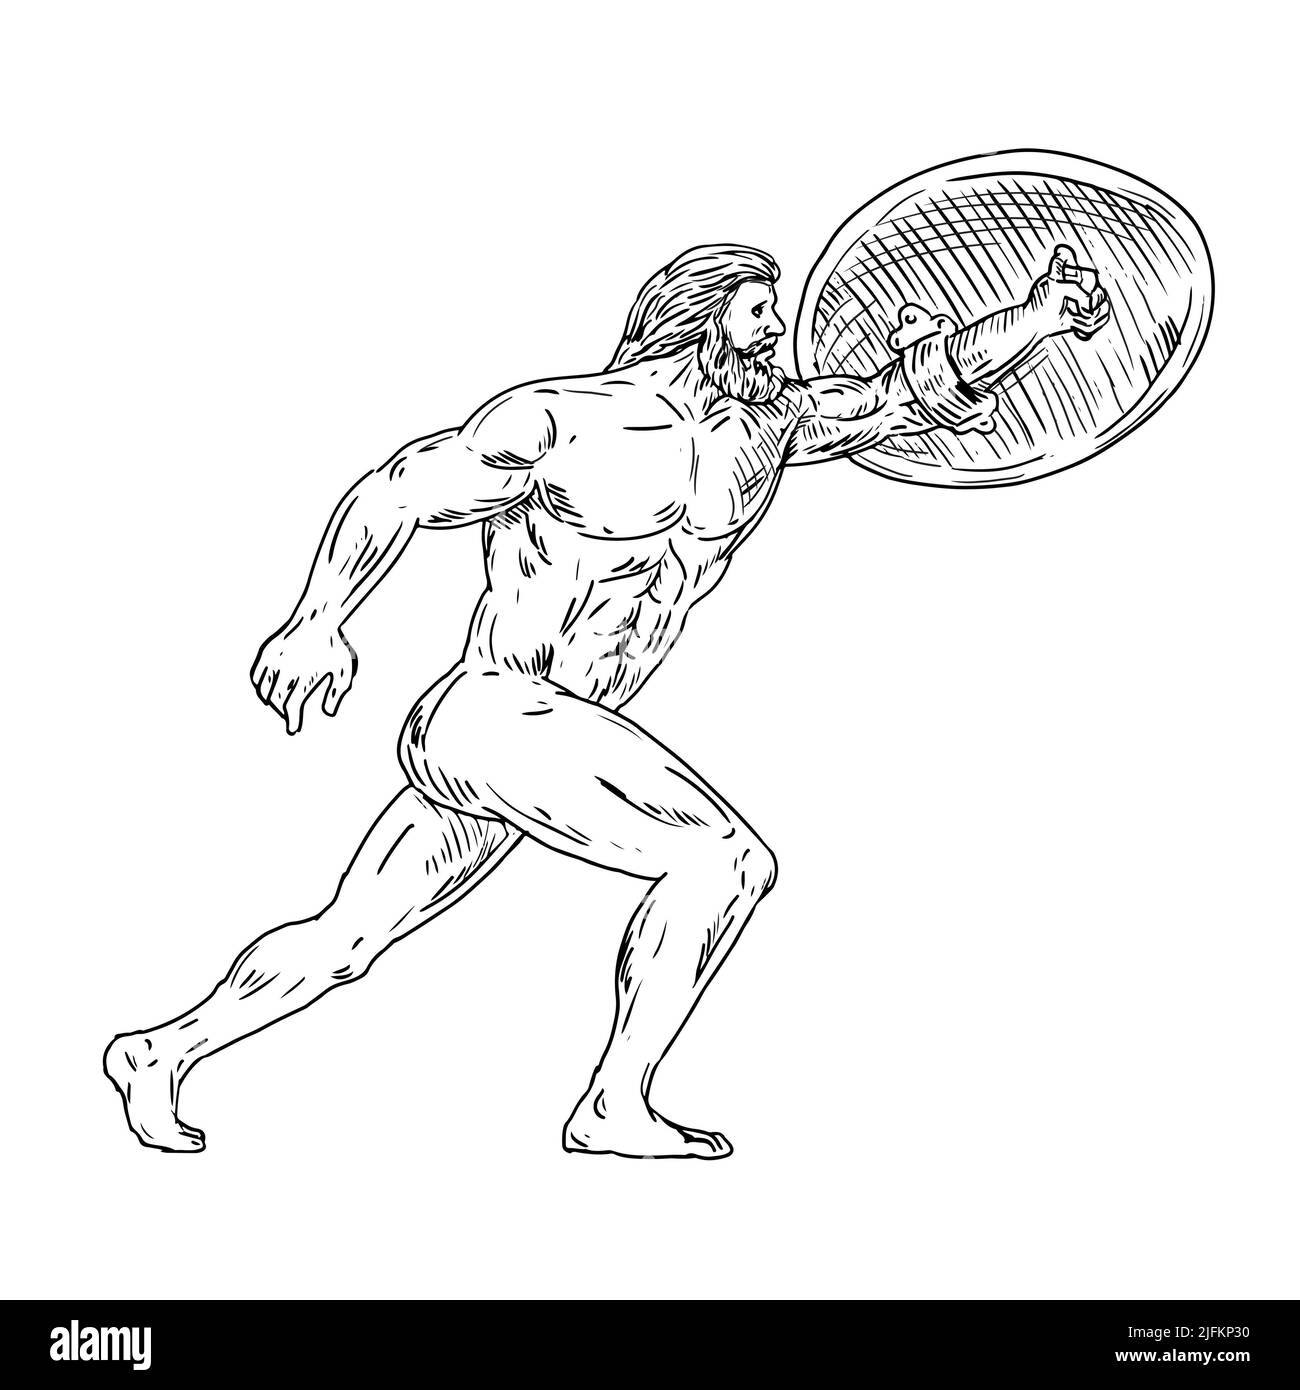 Dibujo de dibujo de estilo ilustración de Heracles, un héroe divino griego equivalente a héroe y dios romanos, Hércules con escudo y urginf adelante hecho en Foto de stock